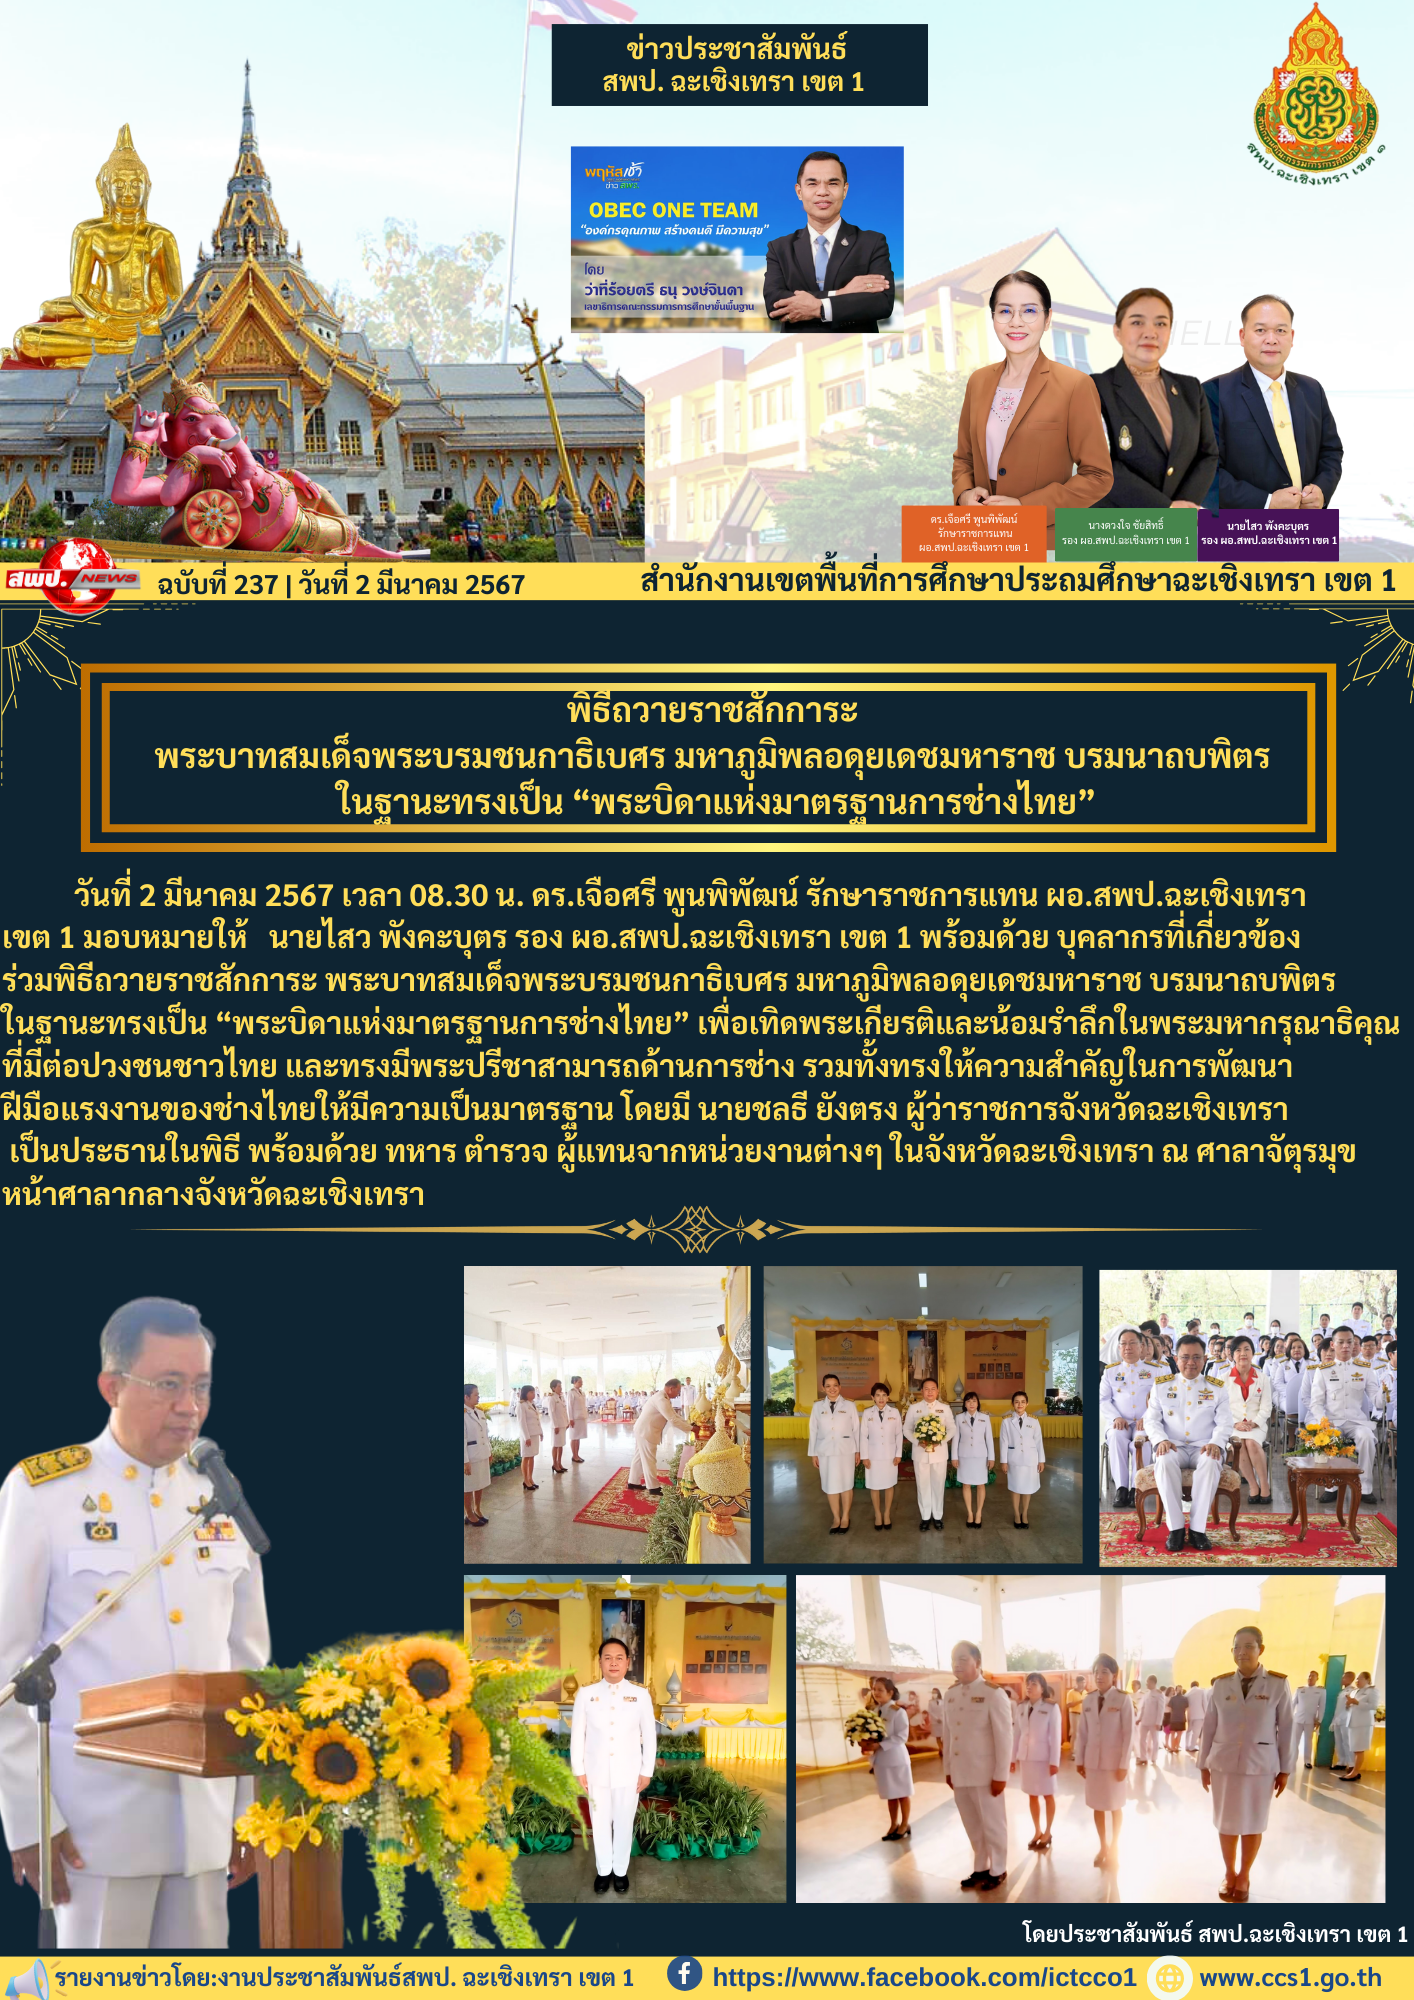 พิธีถวายราชสักการะ พระบาทสมเด็จพระบรมชนกาธิเบศร มหาภูมิพลอดุยเดชมหาราช บรมนาถบพิตร ในฐานะทรงเป็น “พระบิดาแห่งมาตรฐานการช่างไทย”